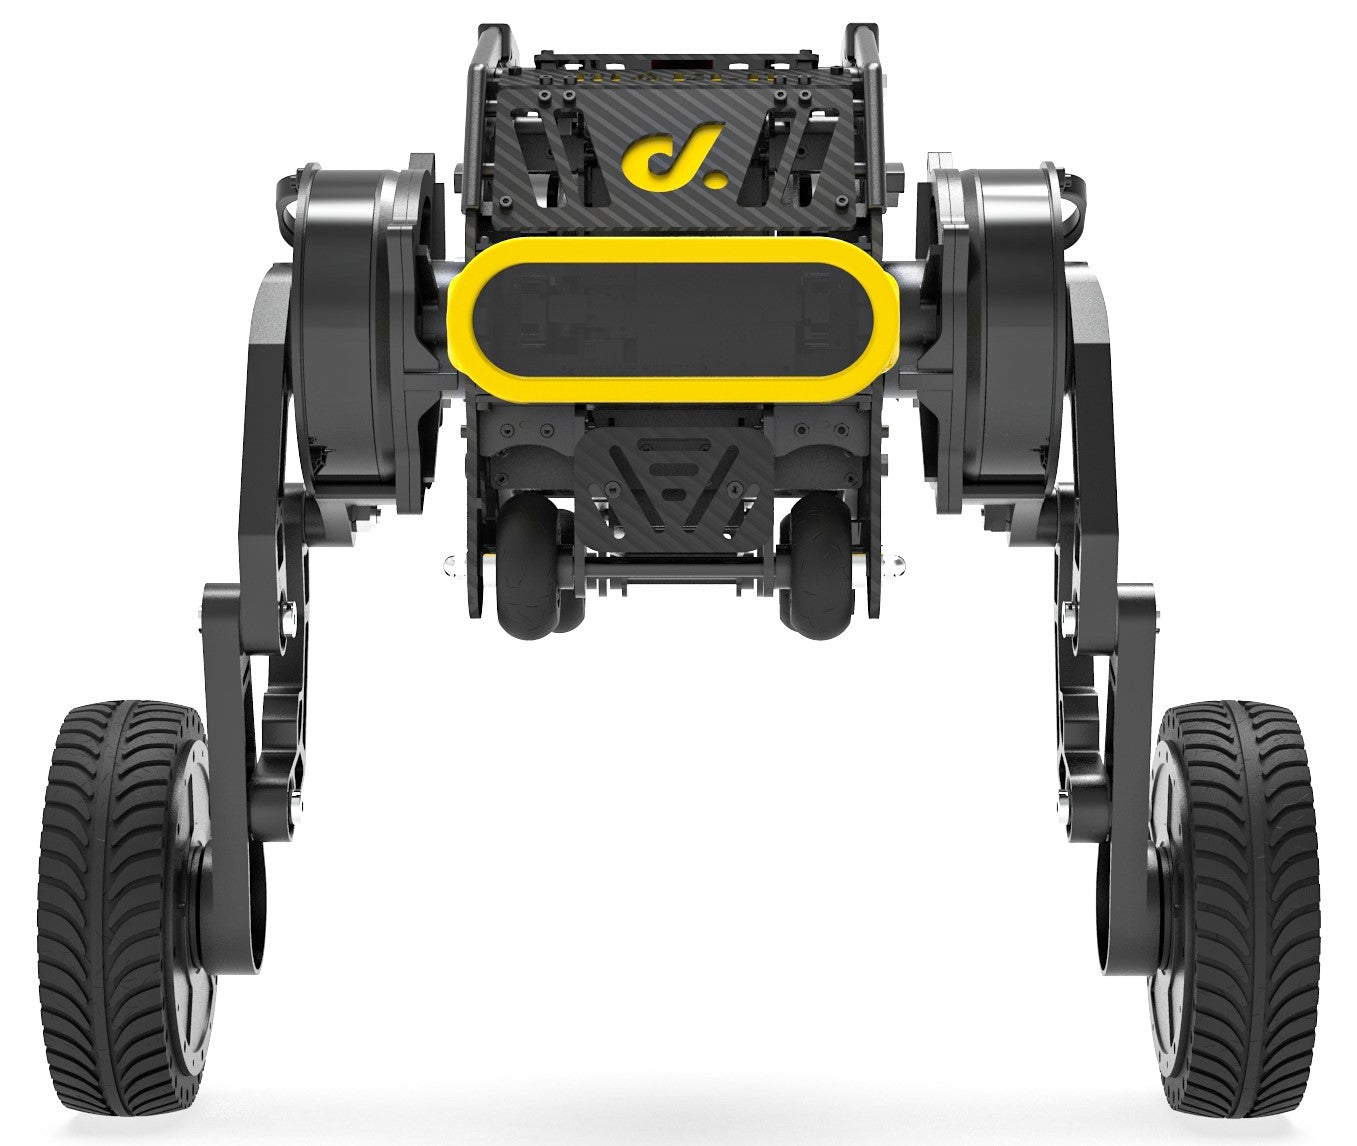 DIABLO two-wheeled robot